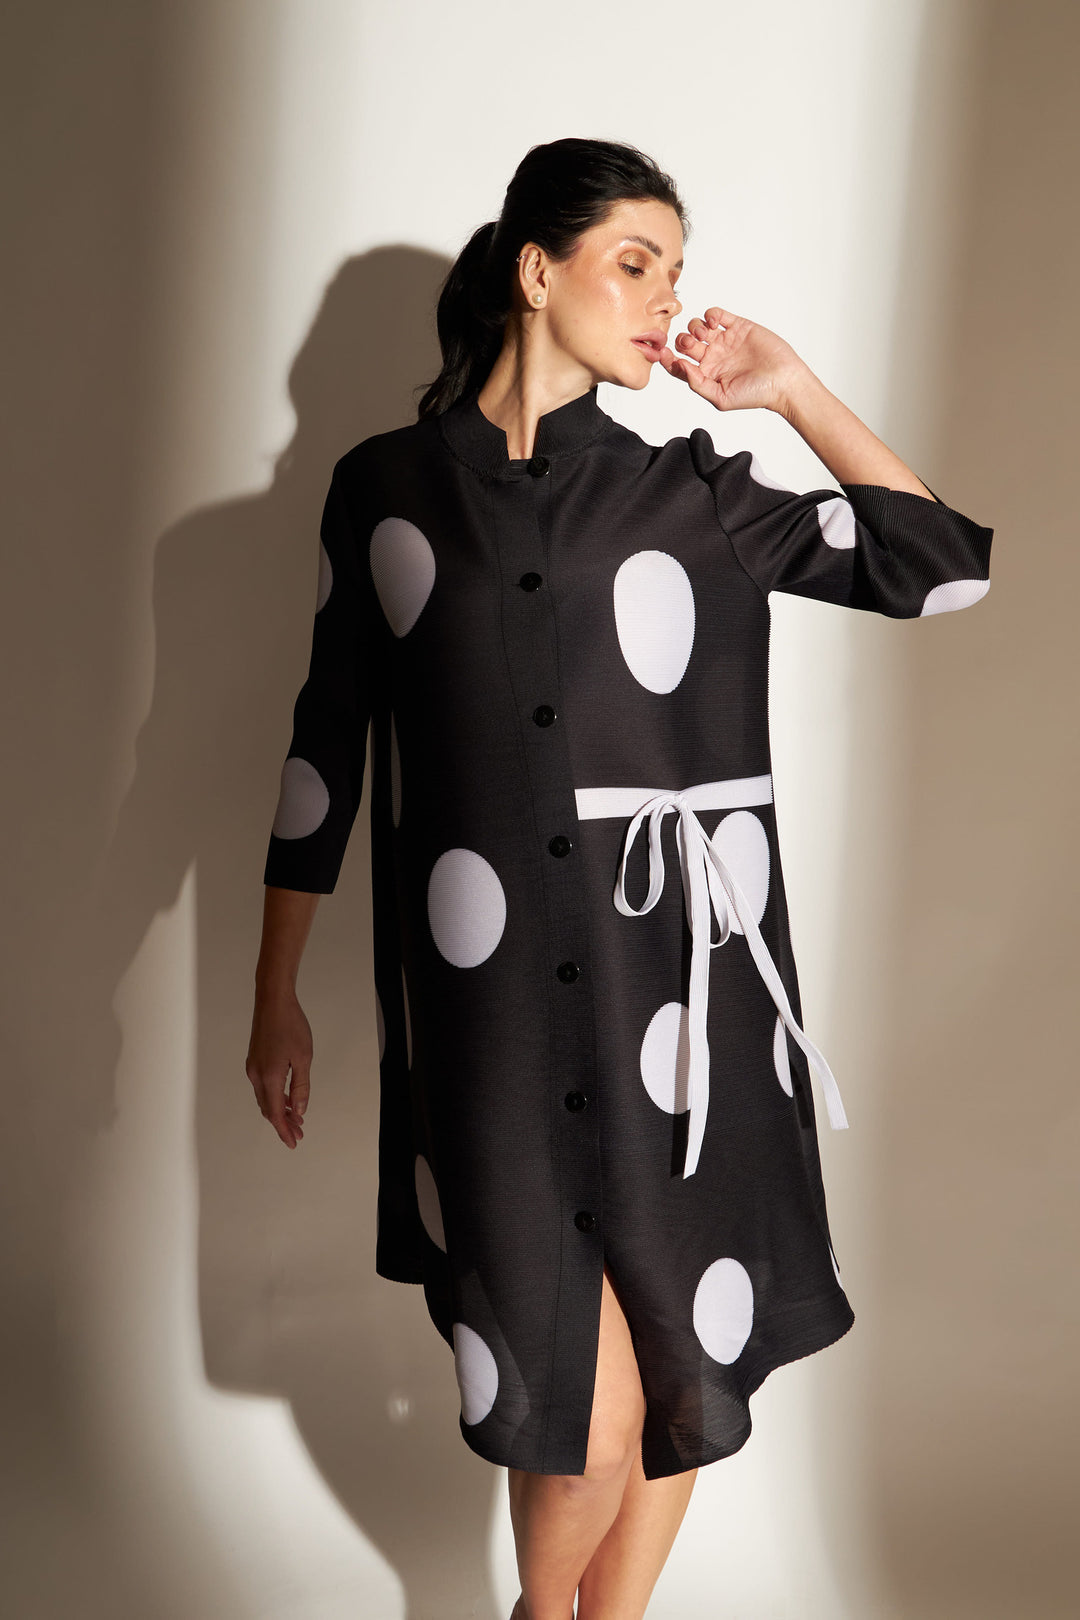 Pheobe Polka Dot Printed Dress - Black